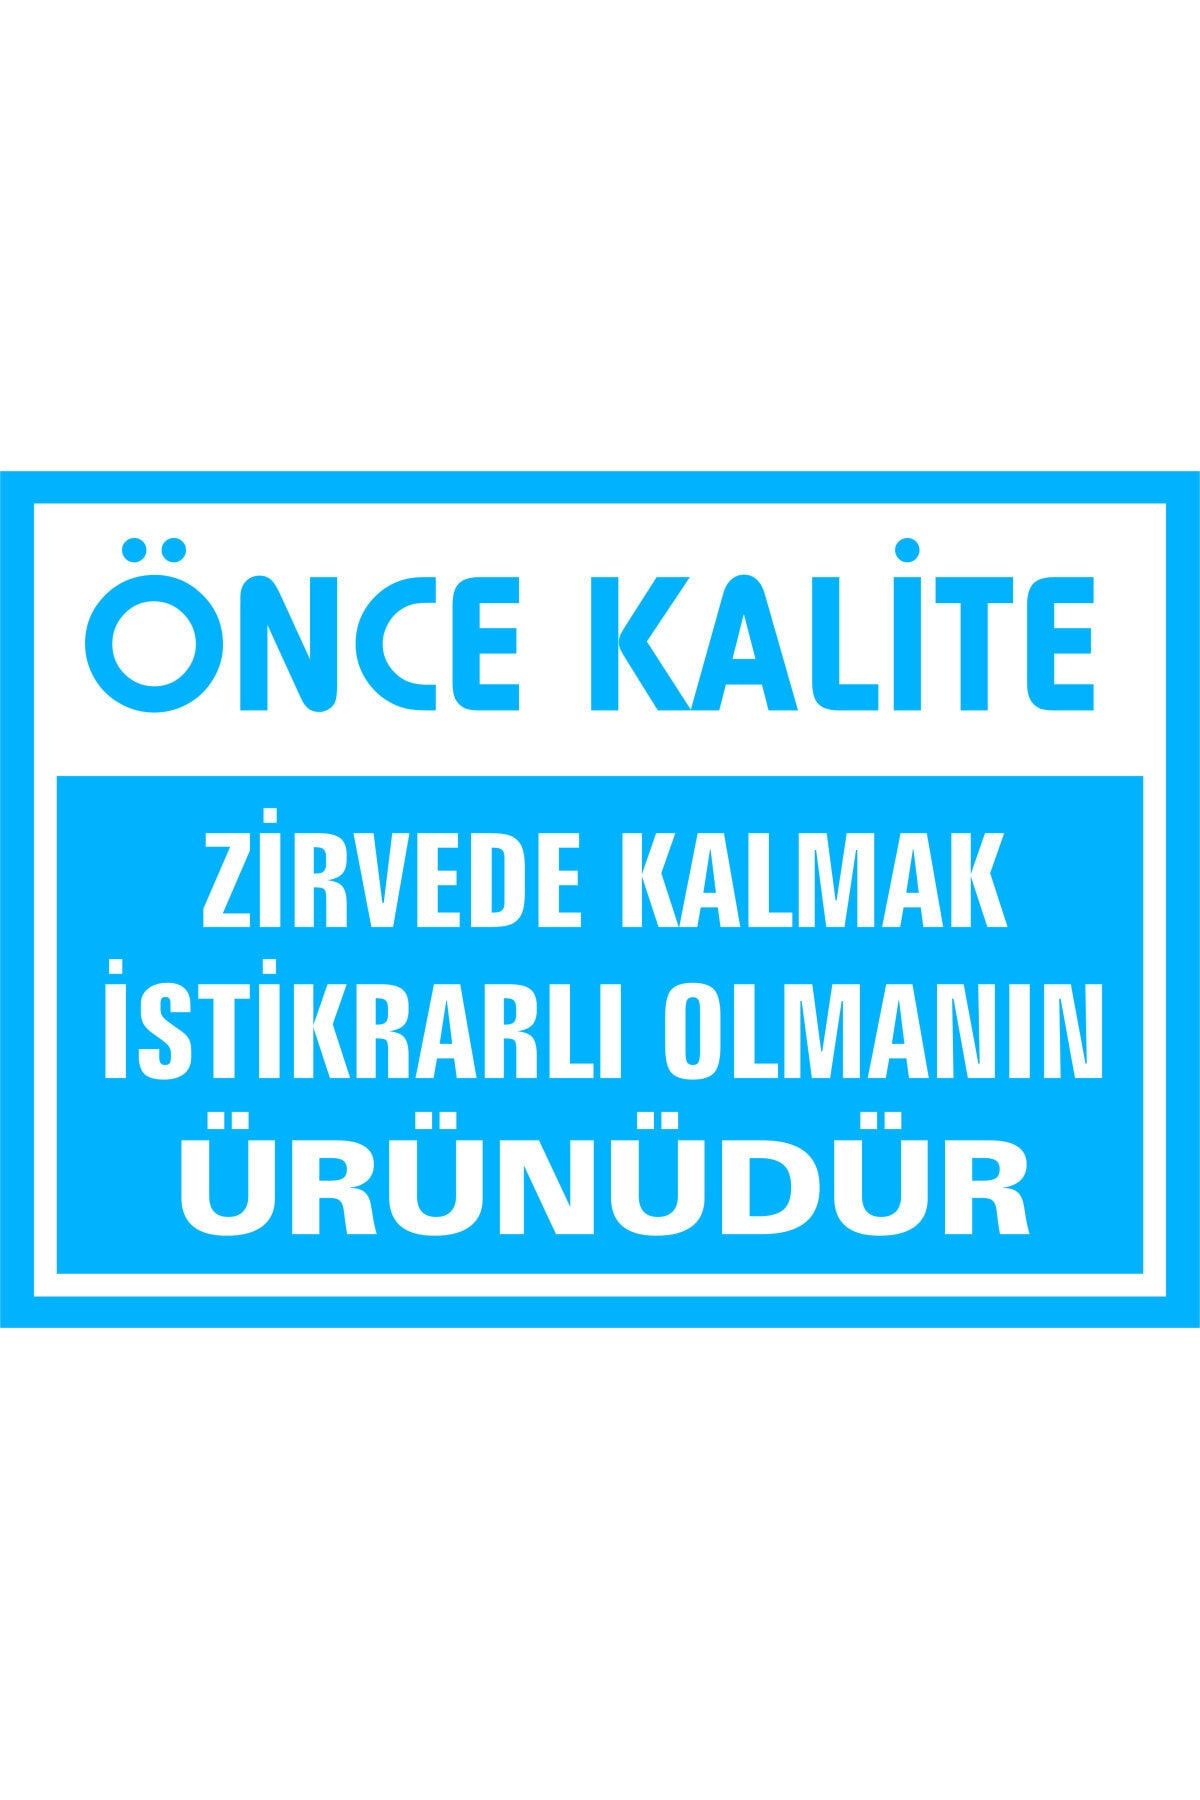 İzmir Serigrafi Önce Kalite Zirvede Kalmak Istikrarlı Olmanın Ürünüdür 3mm Dekota Uyarı Levhası 25 X 35 Cm